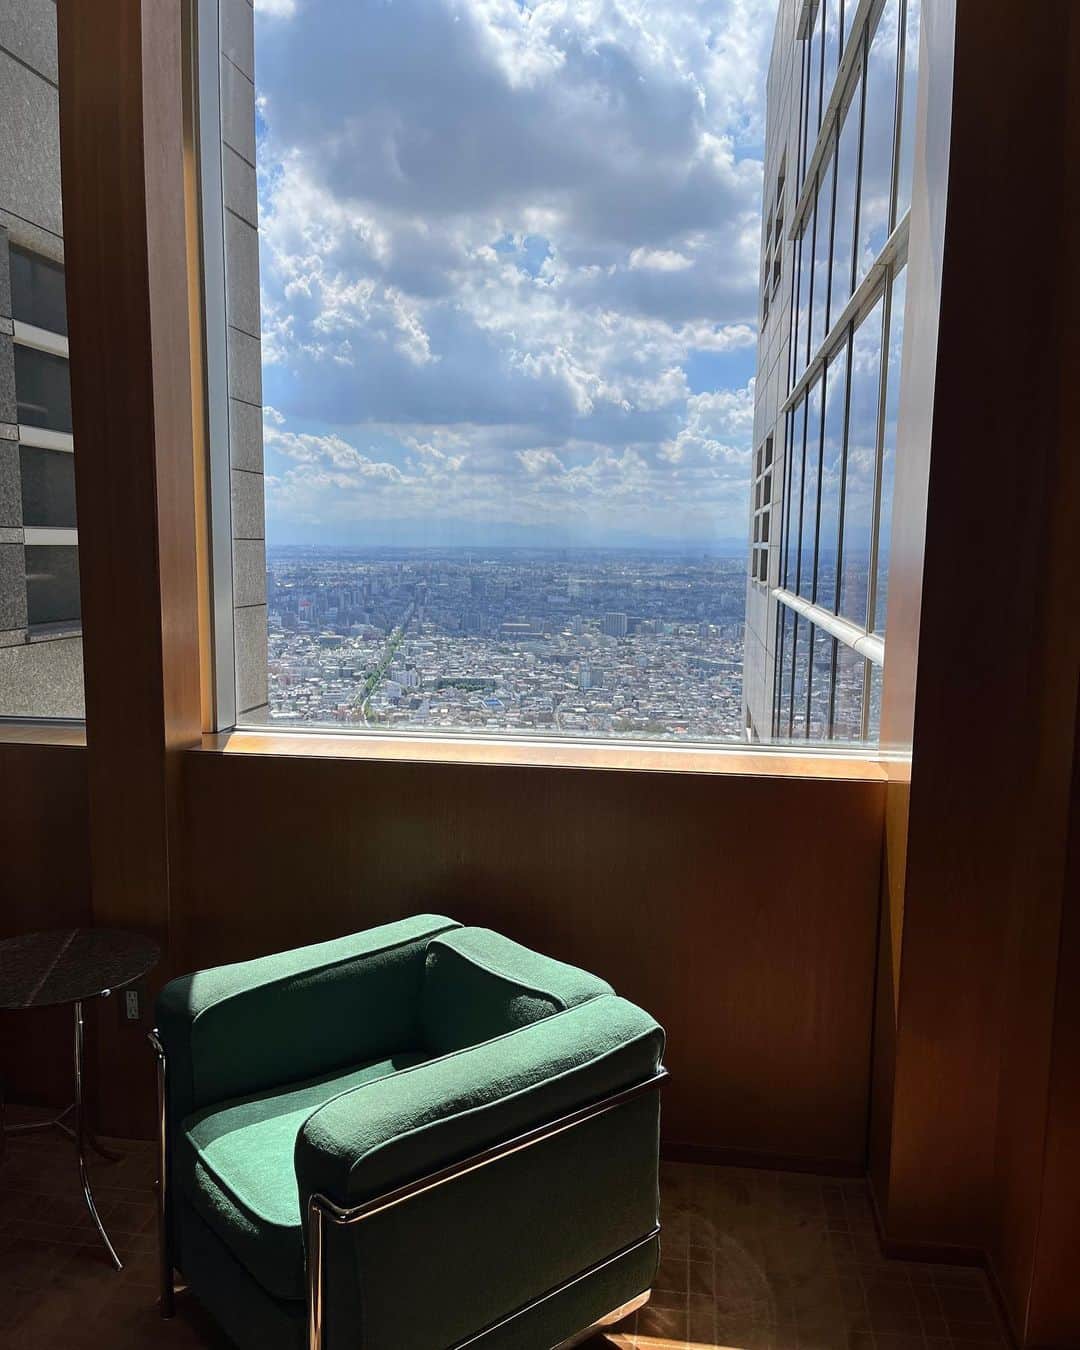 福田葉子のインスタグラム：「静謐なグリーン、それがパークハイアット東京の象徴的なカラー。廊下の壁やカーペット、椅子、あらゆるところが独特のグリーン統一されている。ホテルで白やベージュはよくあるけど、グリーンは世界的にも珍しく、パークハイアット東京の個性を際立たせているパーツのひとつ。 来年2024年5月のGW明けから、全館の改修工事で1年間クローズすることが発表され、 「変えないで」「あのグリーンは失われてしまうの？」という声が多いらしく、ホテル側が「ジョン・モーフォード氏のデザイン哲学を踏襲しつつ改修」と言い添えるほど、ファン多し、私もその一人。 館内のアートもすごく好き。エレベーターや廊下、室内のアート、軽妙かつ洒脱で、買って持ち帰りたいくらい好みです。この絵を選ぶ空間と世界観。残してほしいなぁ、変えるならオークションしてくれないだろうか笑。札、上げるよ！ 新宿にパークハイアット東京ができてから30年、そりゃ改修は必然。どんなふうにアップデートされるのか楽しみでもあり、変わらないでいてほしい気持ちもあり。いや、やっぱり楽しみかな。きっとより素敵なホテルになるに違いないから。お休みになる前にもう一度泊まれたらいいな。 #green #parkhyatttokyo #hotel #design #color #refurbishment #30th #パークハイアット東京　#グリーン　#ホテル　#デザイン　#カラー　#改修　#休館　#ホテル好き　#いちばん好きなホテル」